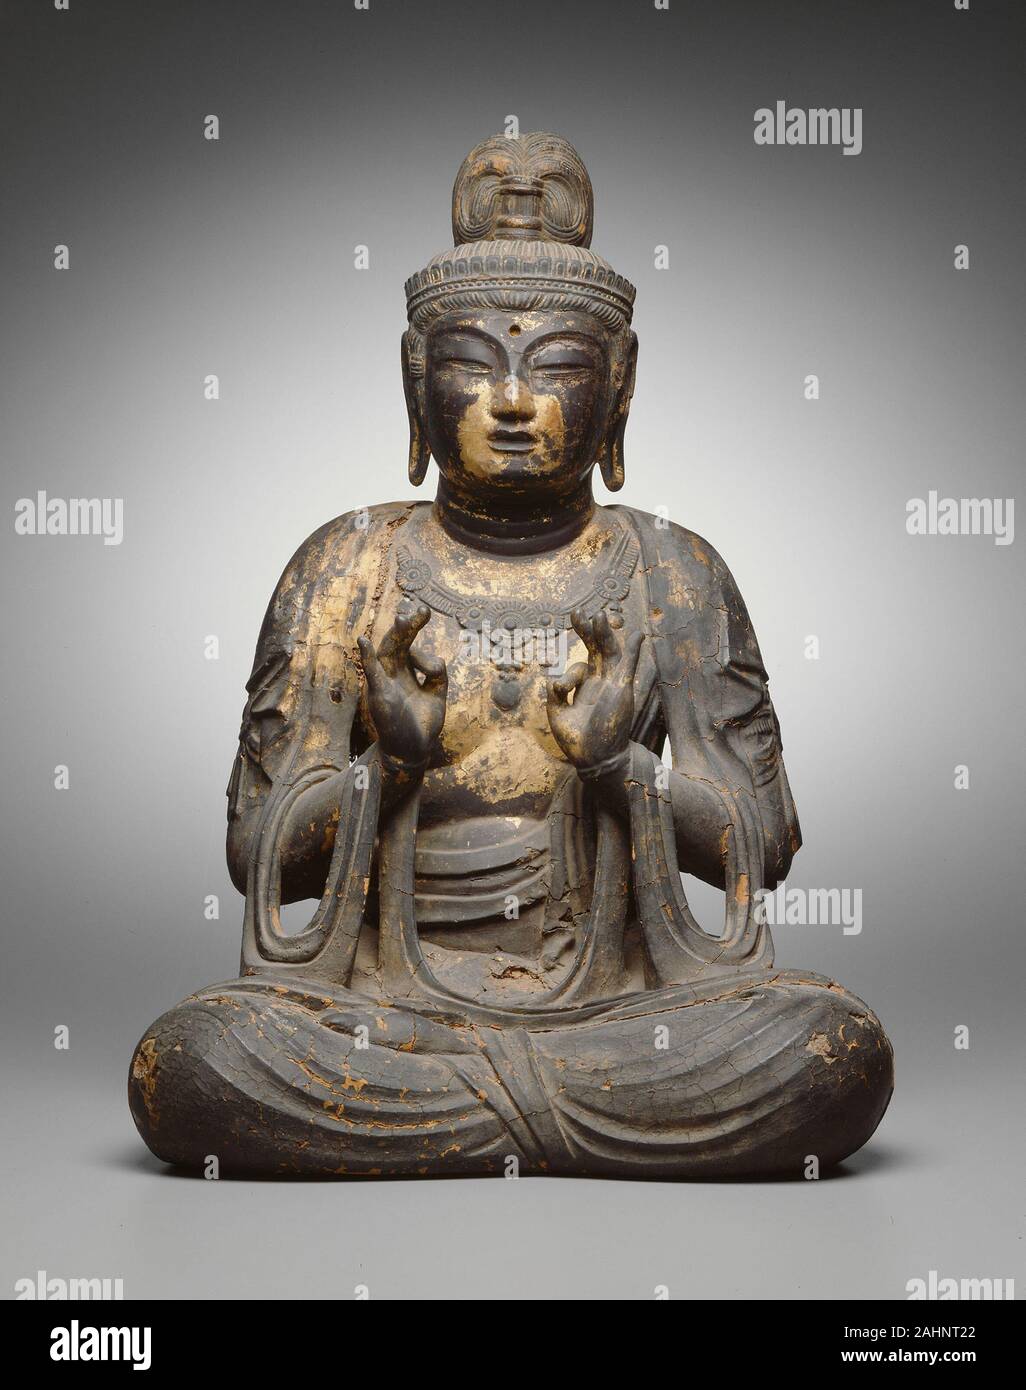 Sitzt Bodhisattva. 770 AD - 780 AD. Japan. Wood Core, chemische Lack, Spuren von Blattgold Diese seltene und wichtige Skulptur stellt einen buddhistischen Bodhisattva oder bosatsu, eine aufgeklärte und mitfühlenden Wesen, verschoben die Buddhaschaft, um andere zu retten. Ruhe, prächtige, und vollmundig, die bosatsu ist in einem frontalen, meditativer Haltung sitzt; seine Hände würdevoll, mitten in der Luft angehoben, eine Geste der Qualitätssicherung. Der Buddhismus, der in Indien mit den Lehren des Buddha Sakyamuni, oder Siddhartha Gautama (c. entstanden 563 - C. 483 v. Chr.), war die offizielle Religion des Japan am Anfang o benannt Stockfoto